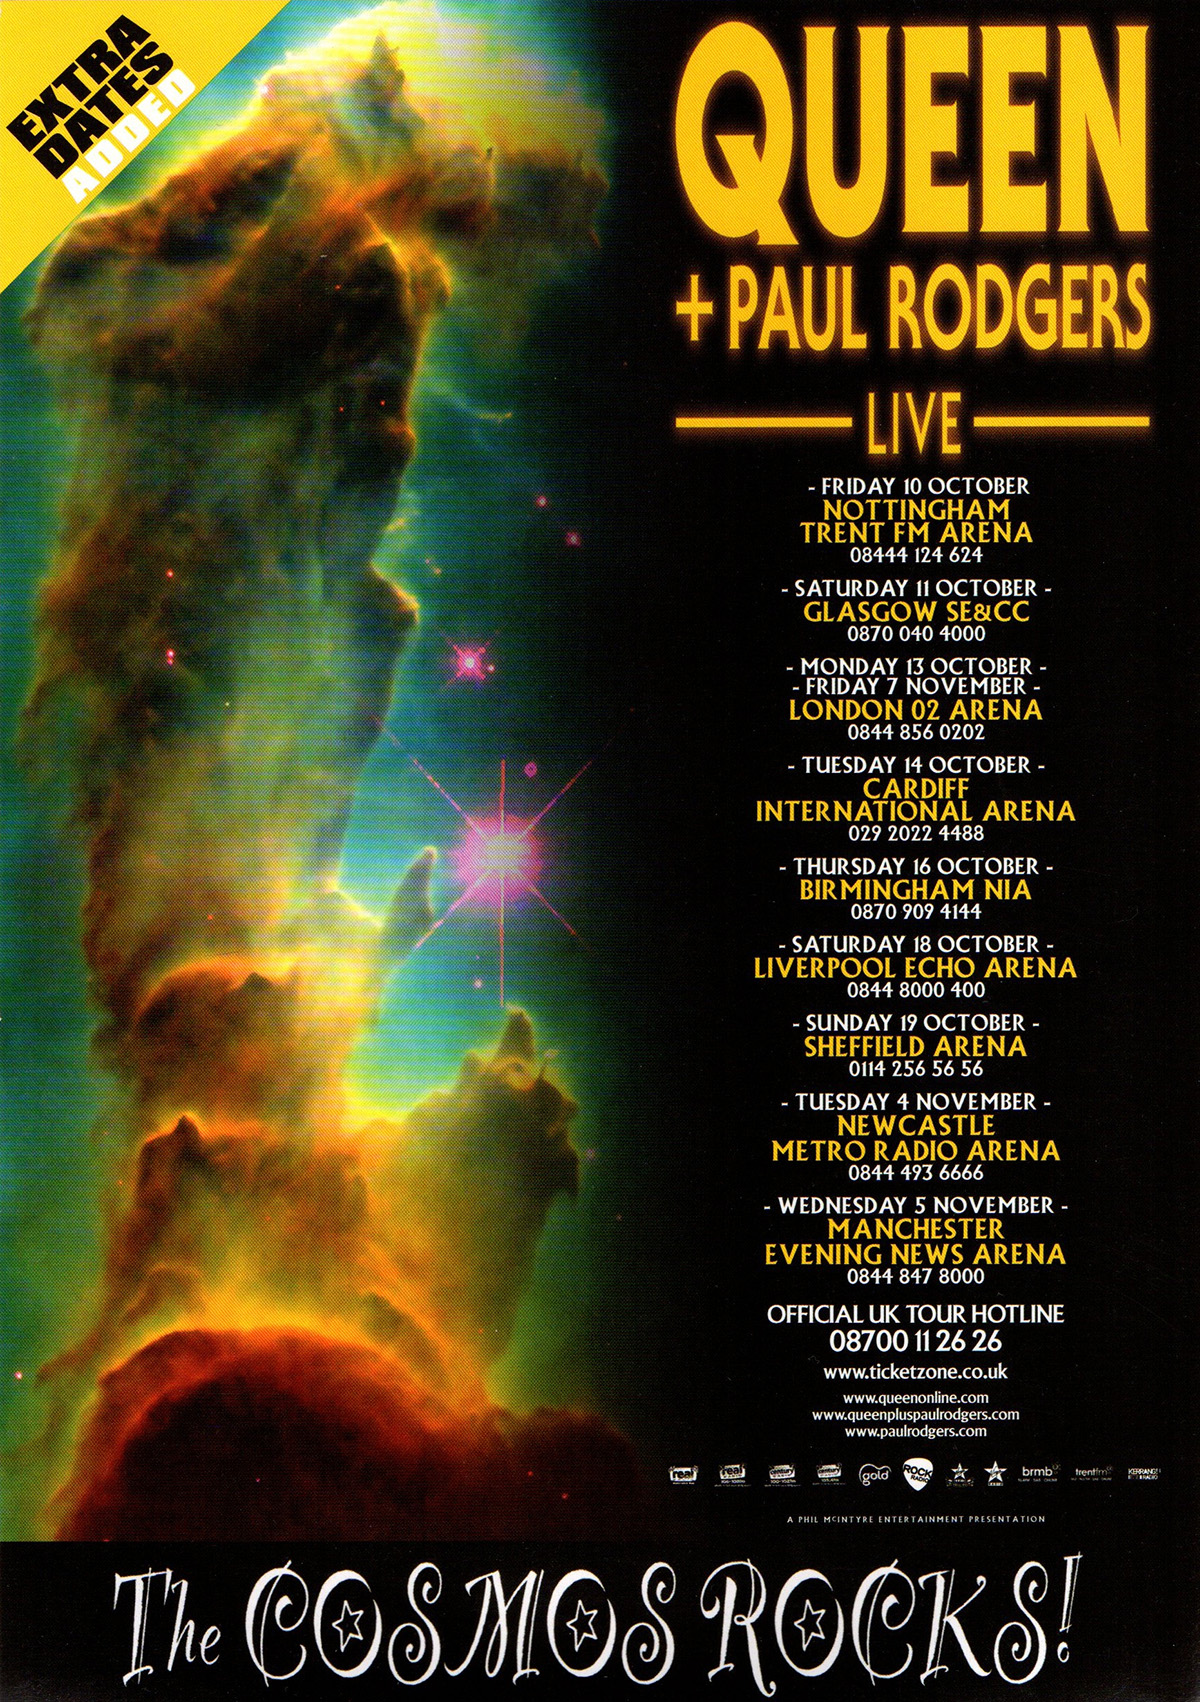 Queen + Paul Rodgers in the UK in October 2008